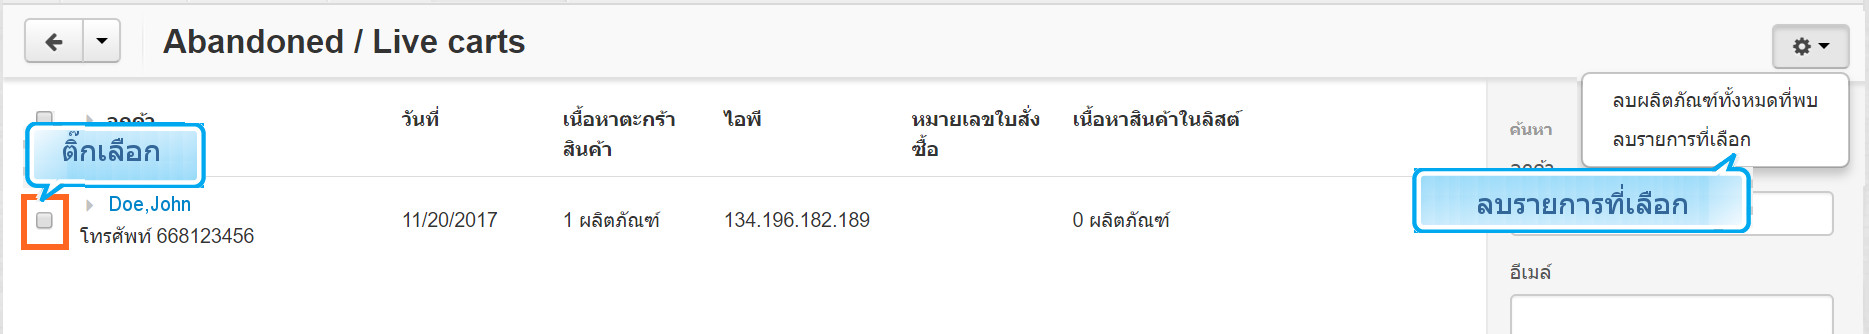 เว็บไซต์สำเร็จรูปไทย - คู่มือร้านออนไลน์ - การจัดการร้านออนไลน์ - สร้างเว็บไซต์ - การตลาด- การลบ Abandoned / Live carts